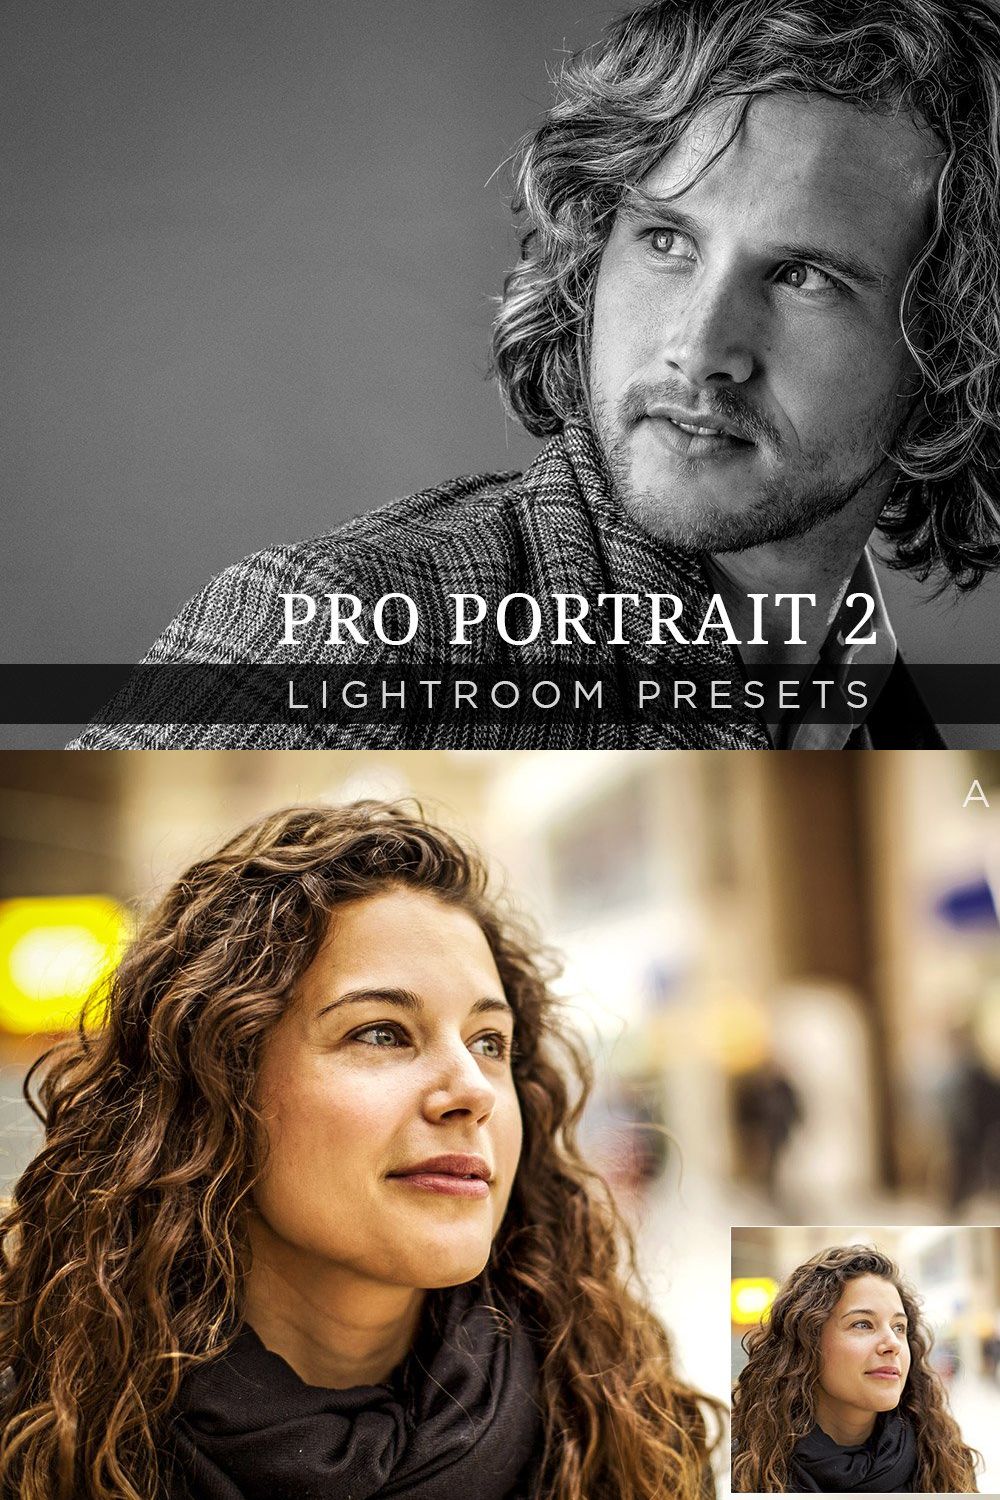 Pro Portrait Lightroom Presets Vol 2 pinterest preview image.